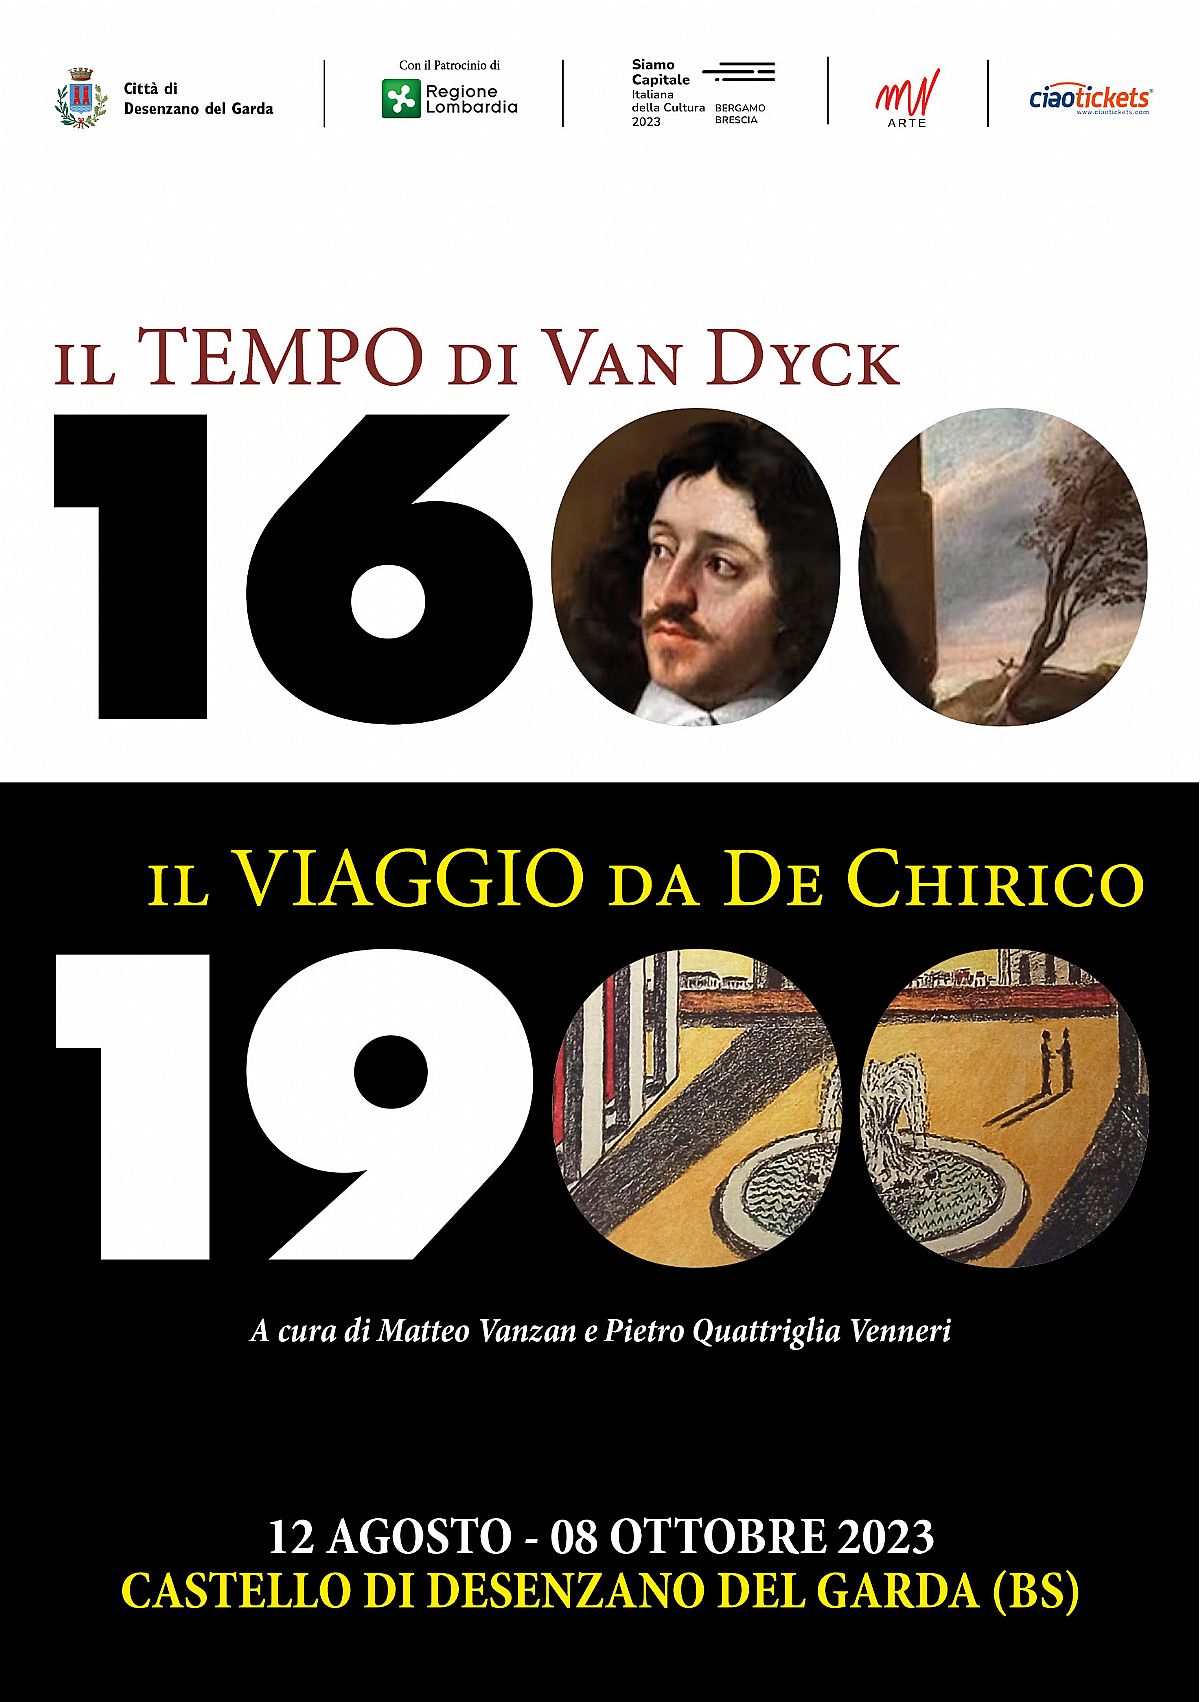 1600: l'epoca di Van Dyck / 1900: il viaggio da de Chirico